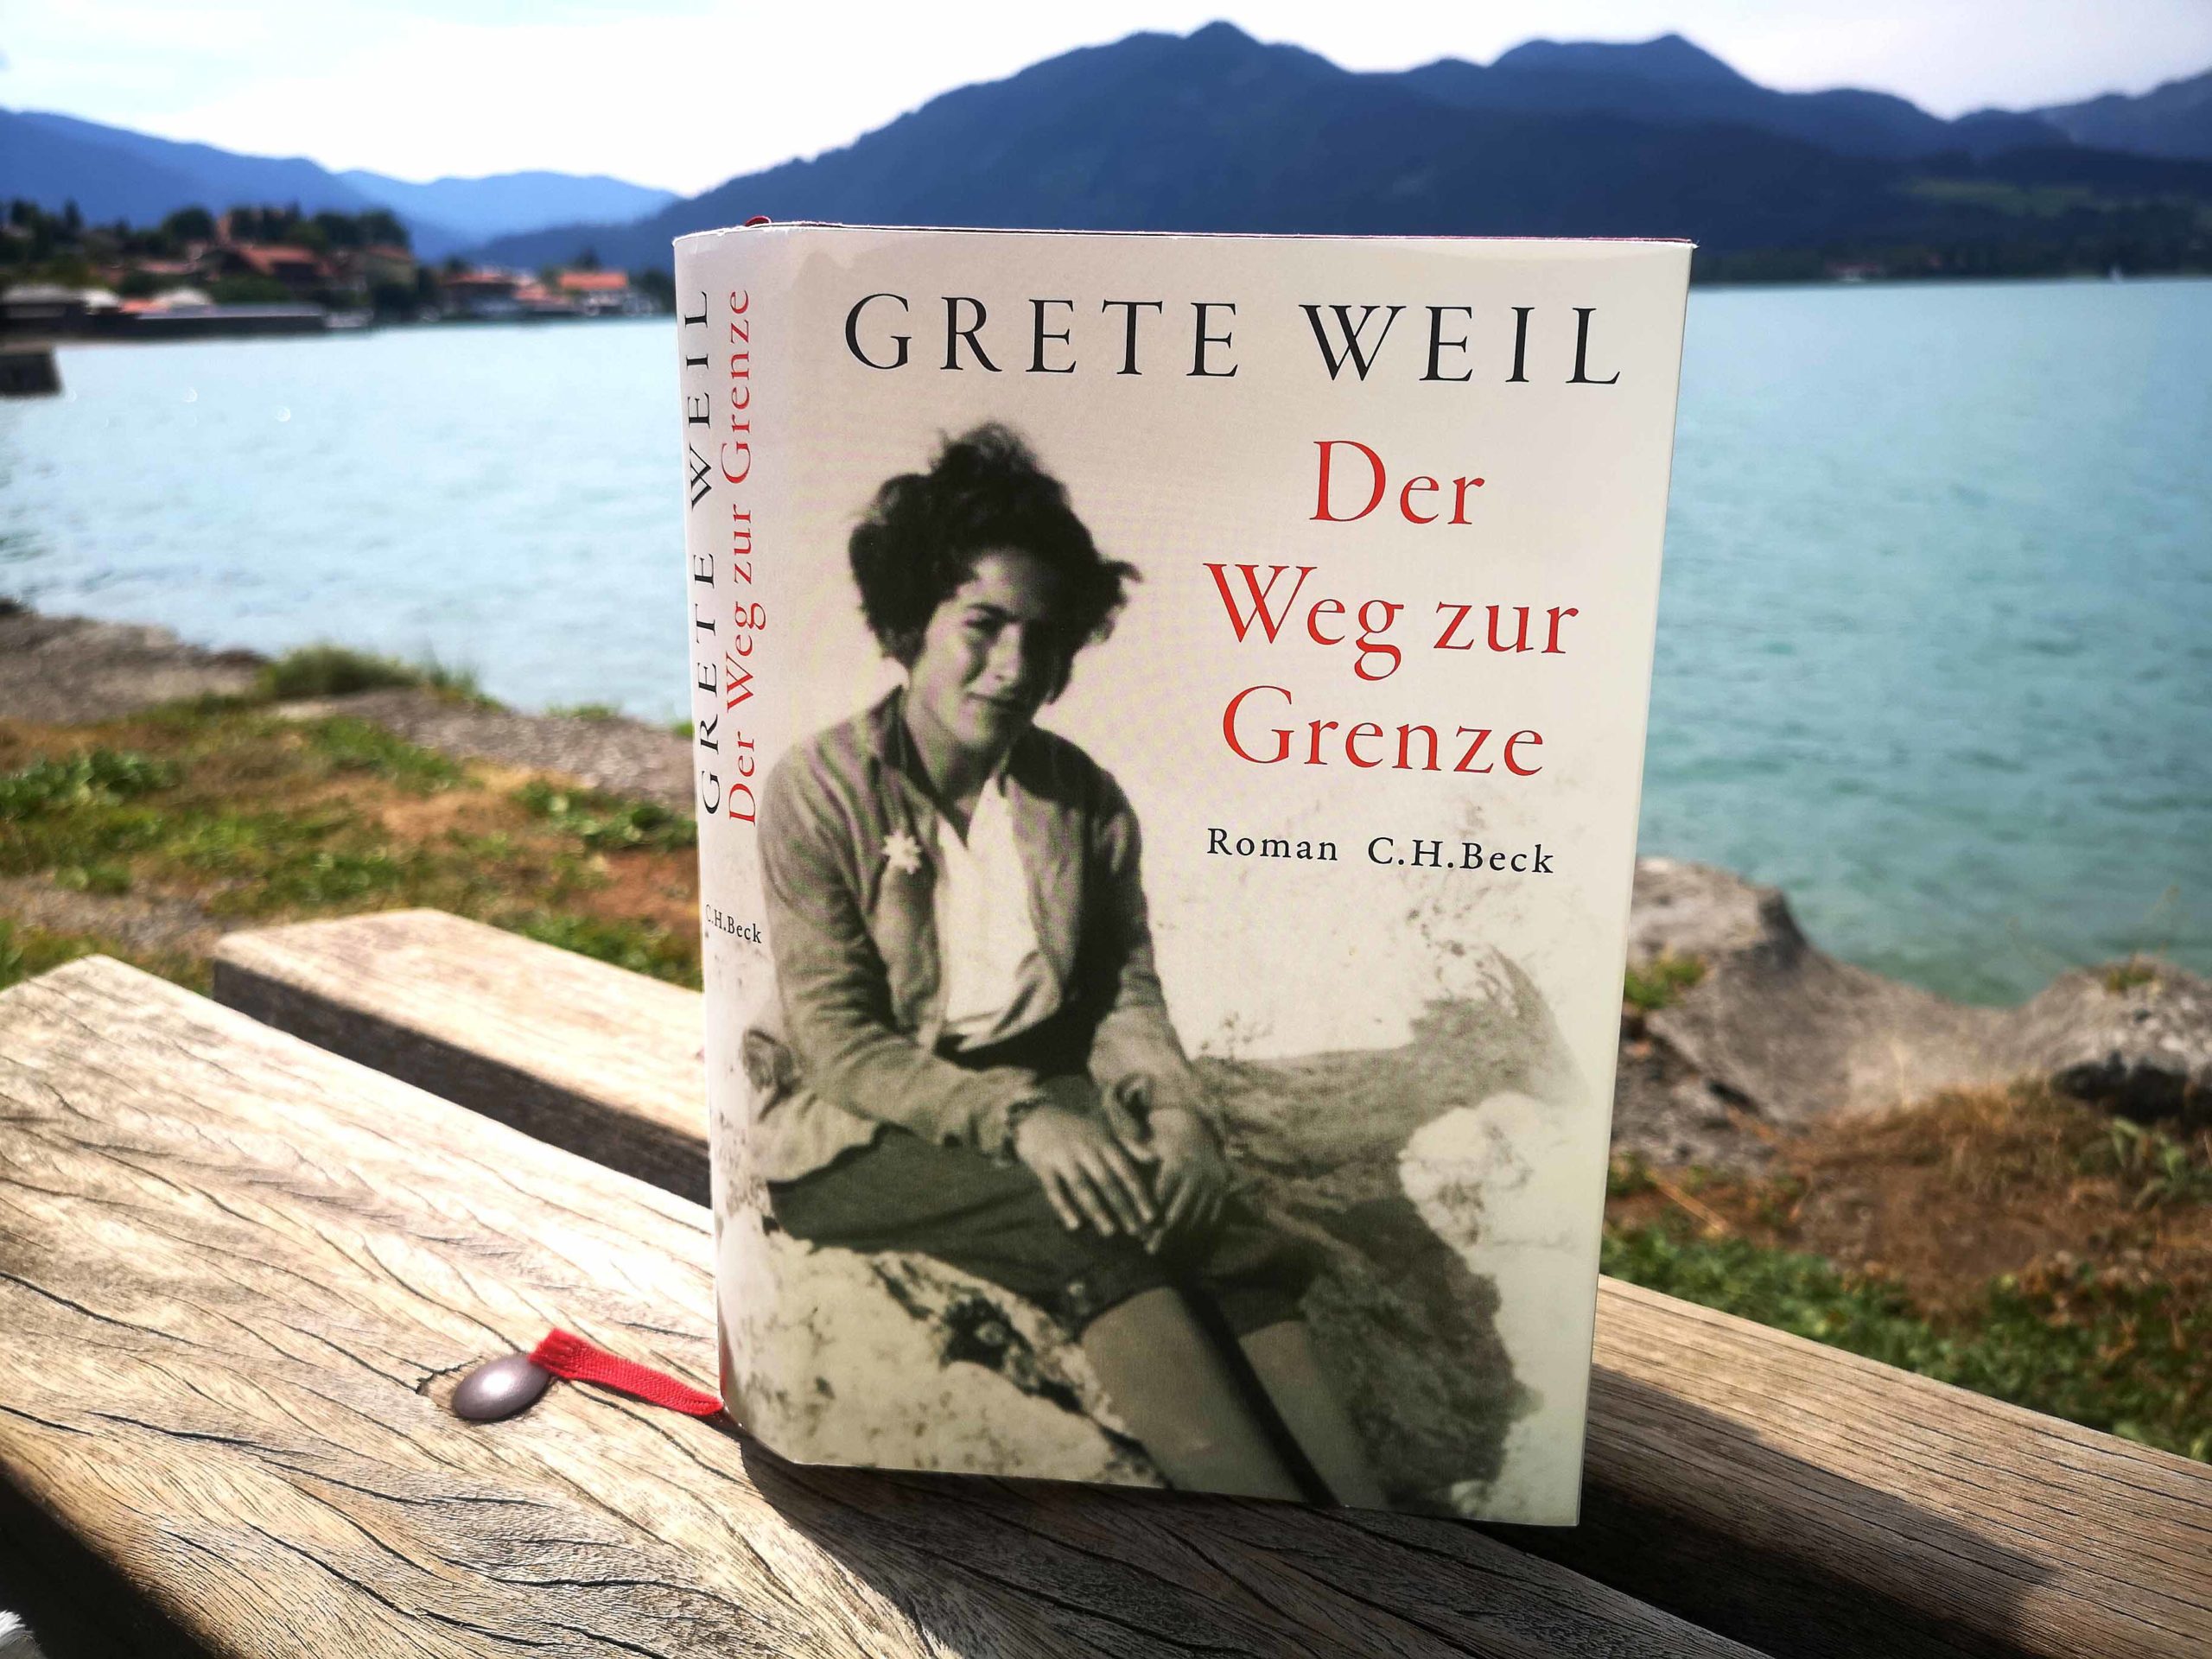 Grete Weil - "Der Weg zur Grenze" führt vom Tegernsee nach Österreich in die Freiheit